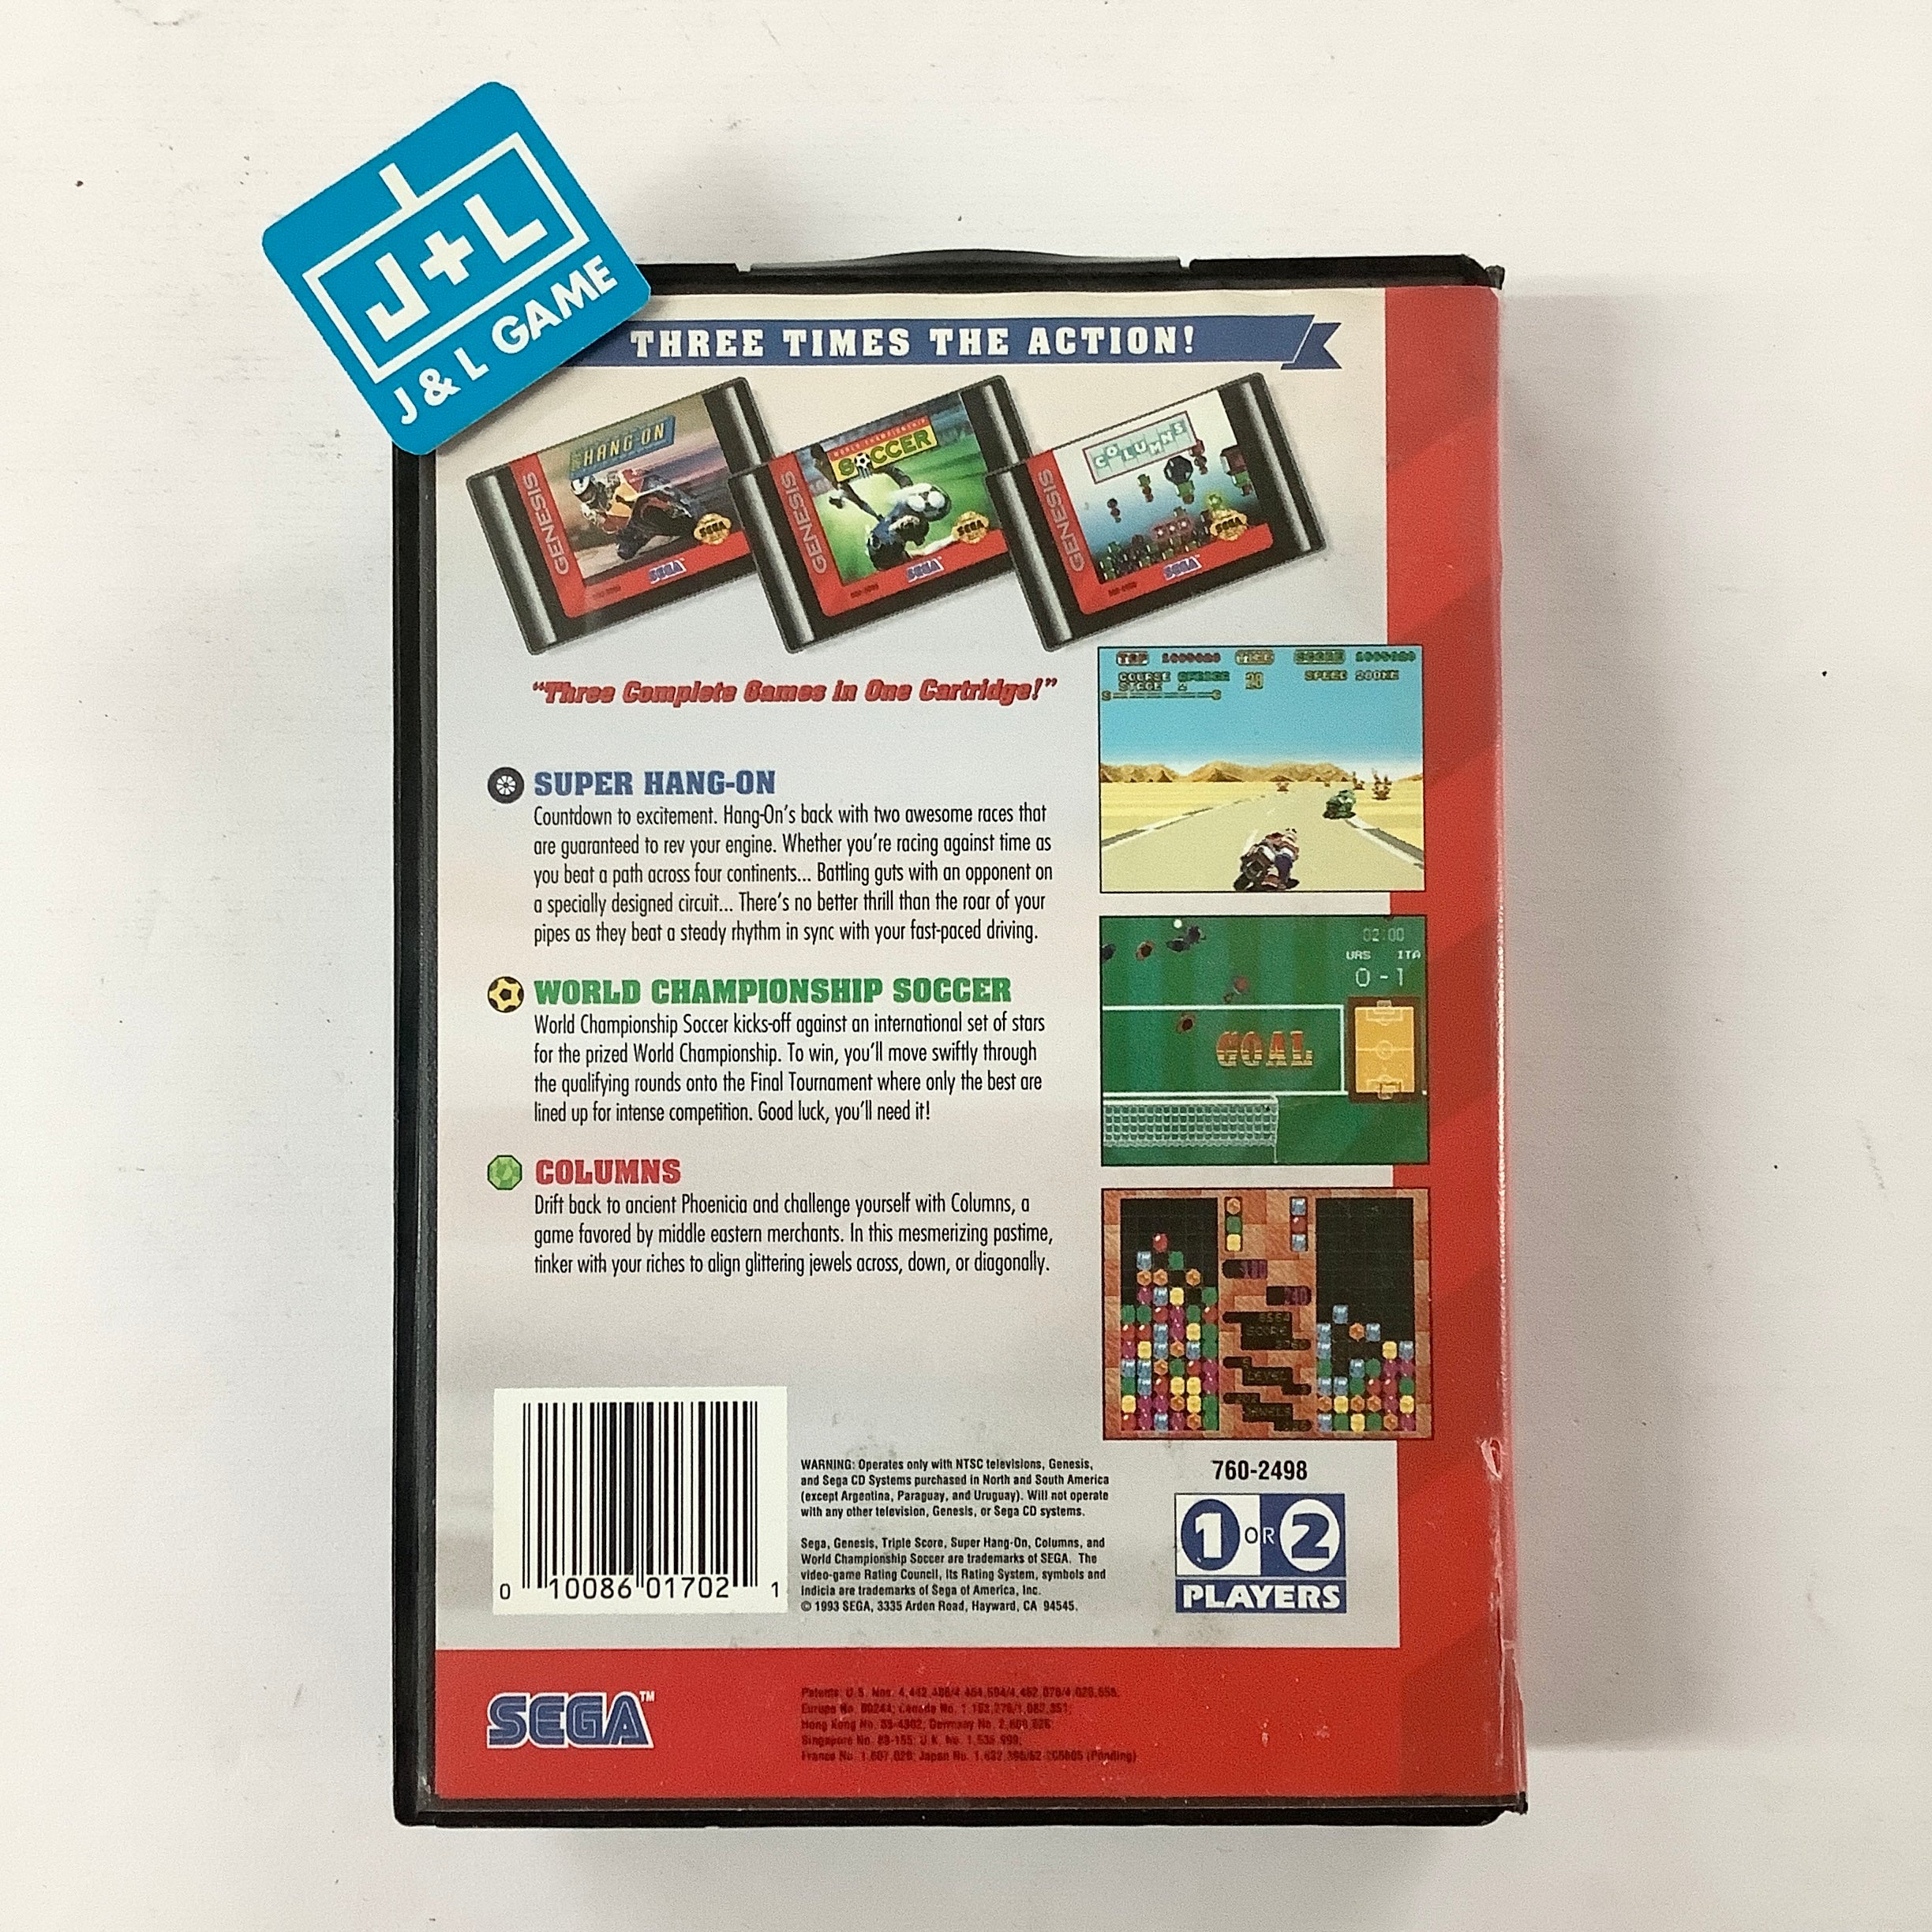 Triple Score: 3 Games in 1 - (SG) SEGA Genesis [Pre-Owned] Video Games Sega   